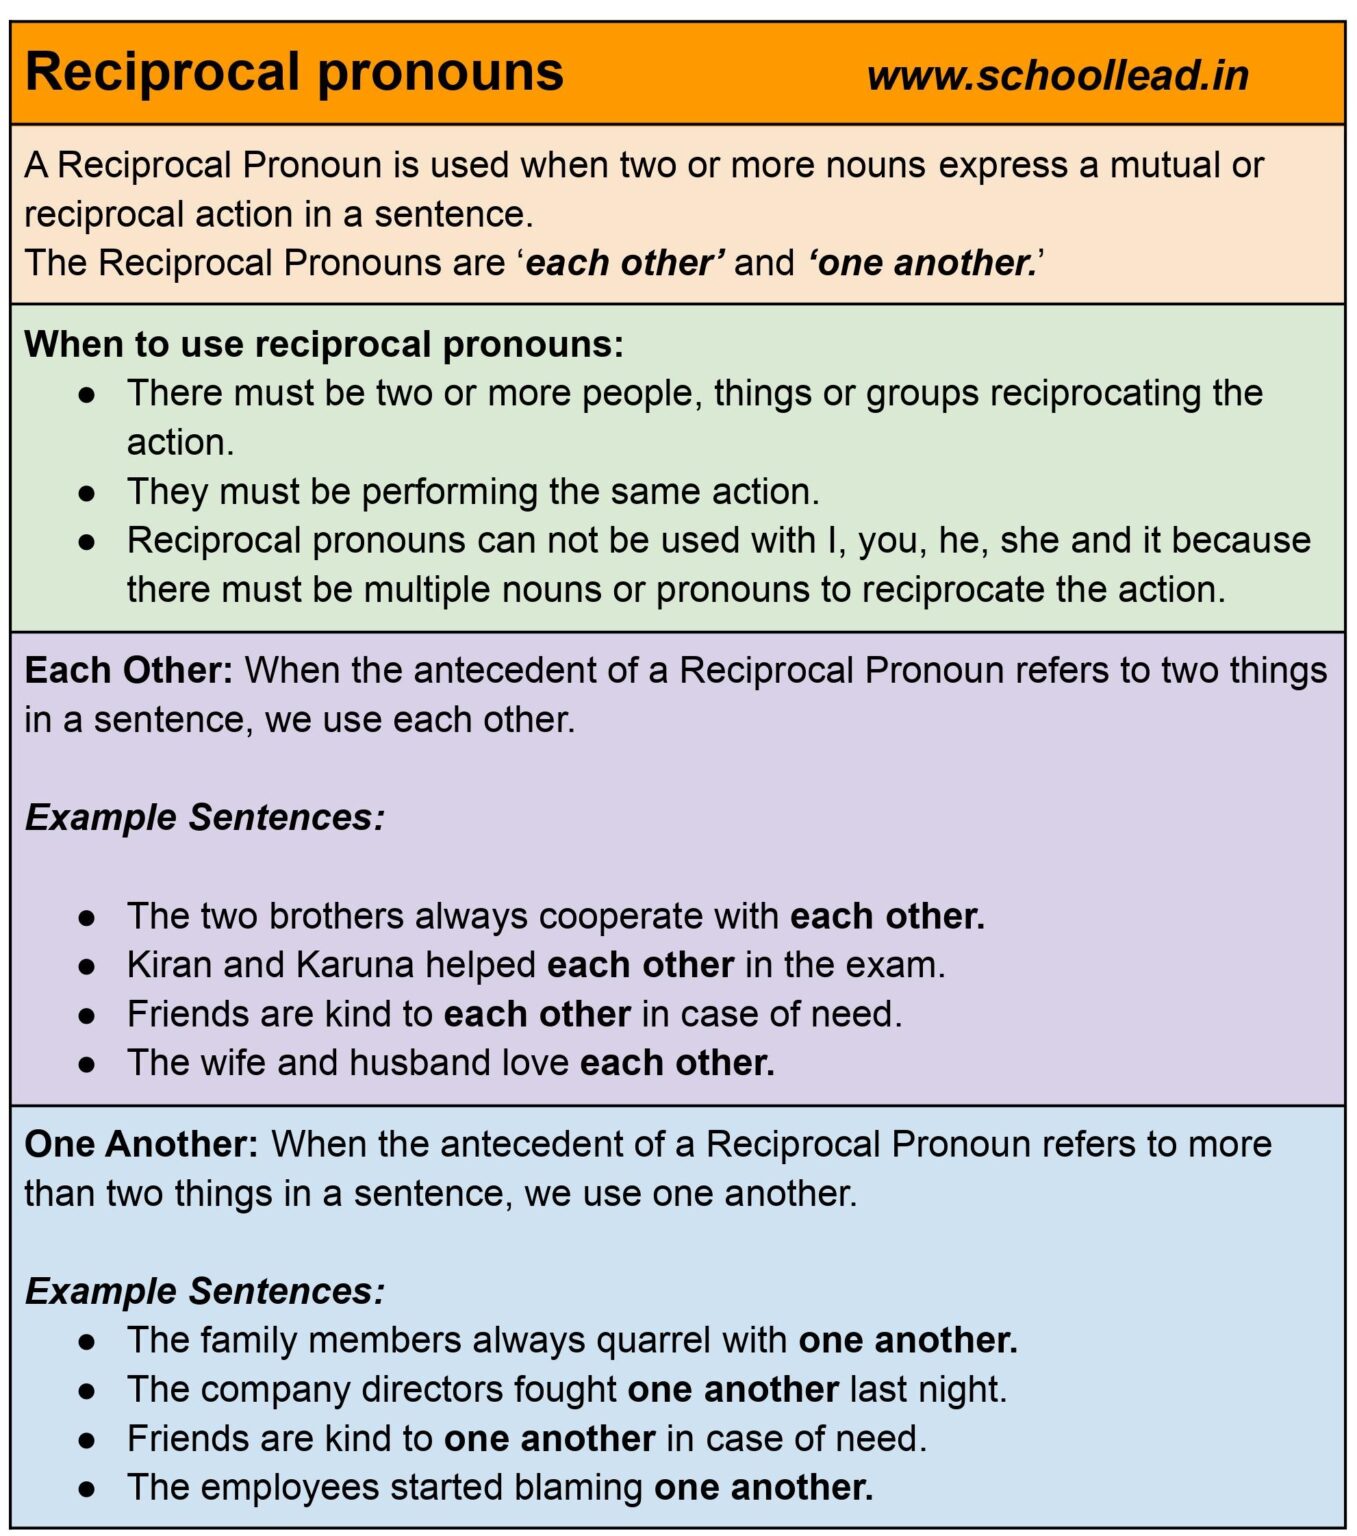 reciprocal-pronouns-the-pronoun-school-lead